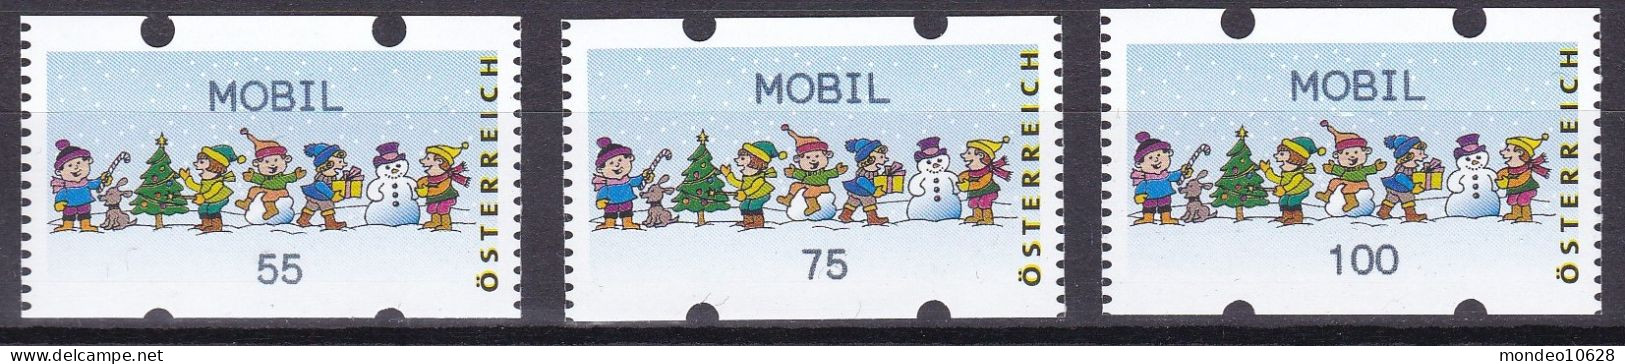 ATM Österreich - Ausgabe 24.11.2006 - Mobil - Kinder - Mit Zählnummern - Postfrisch (20) - Automatenmarken [ATM]